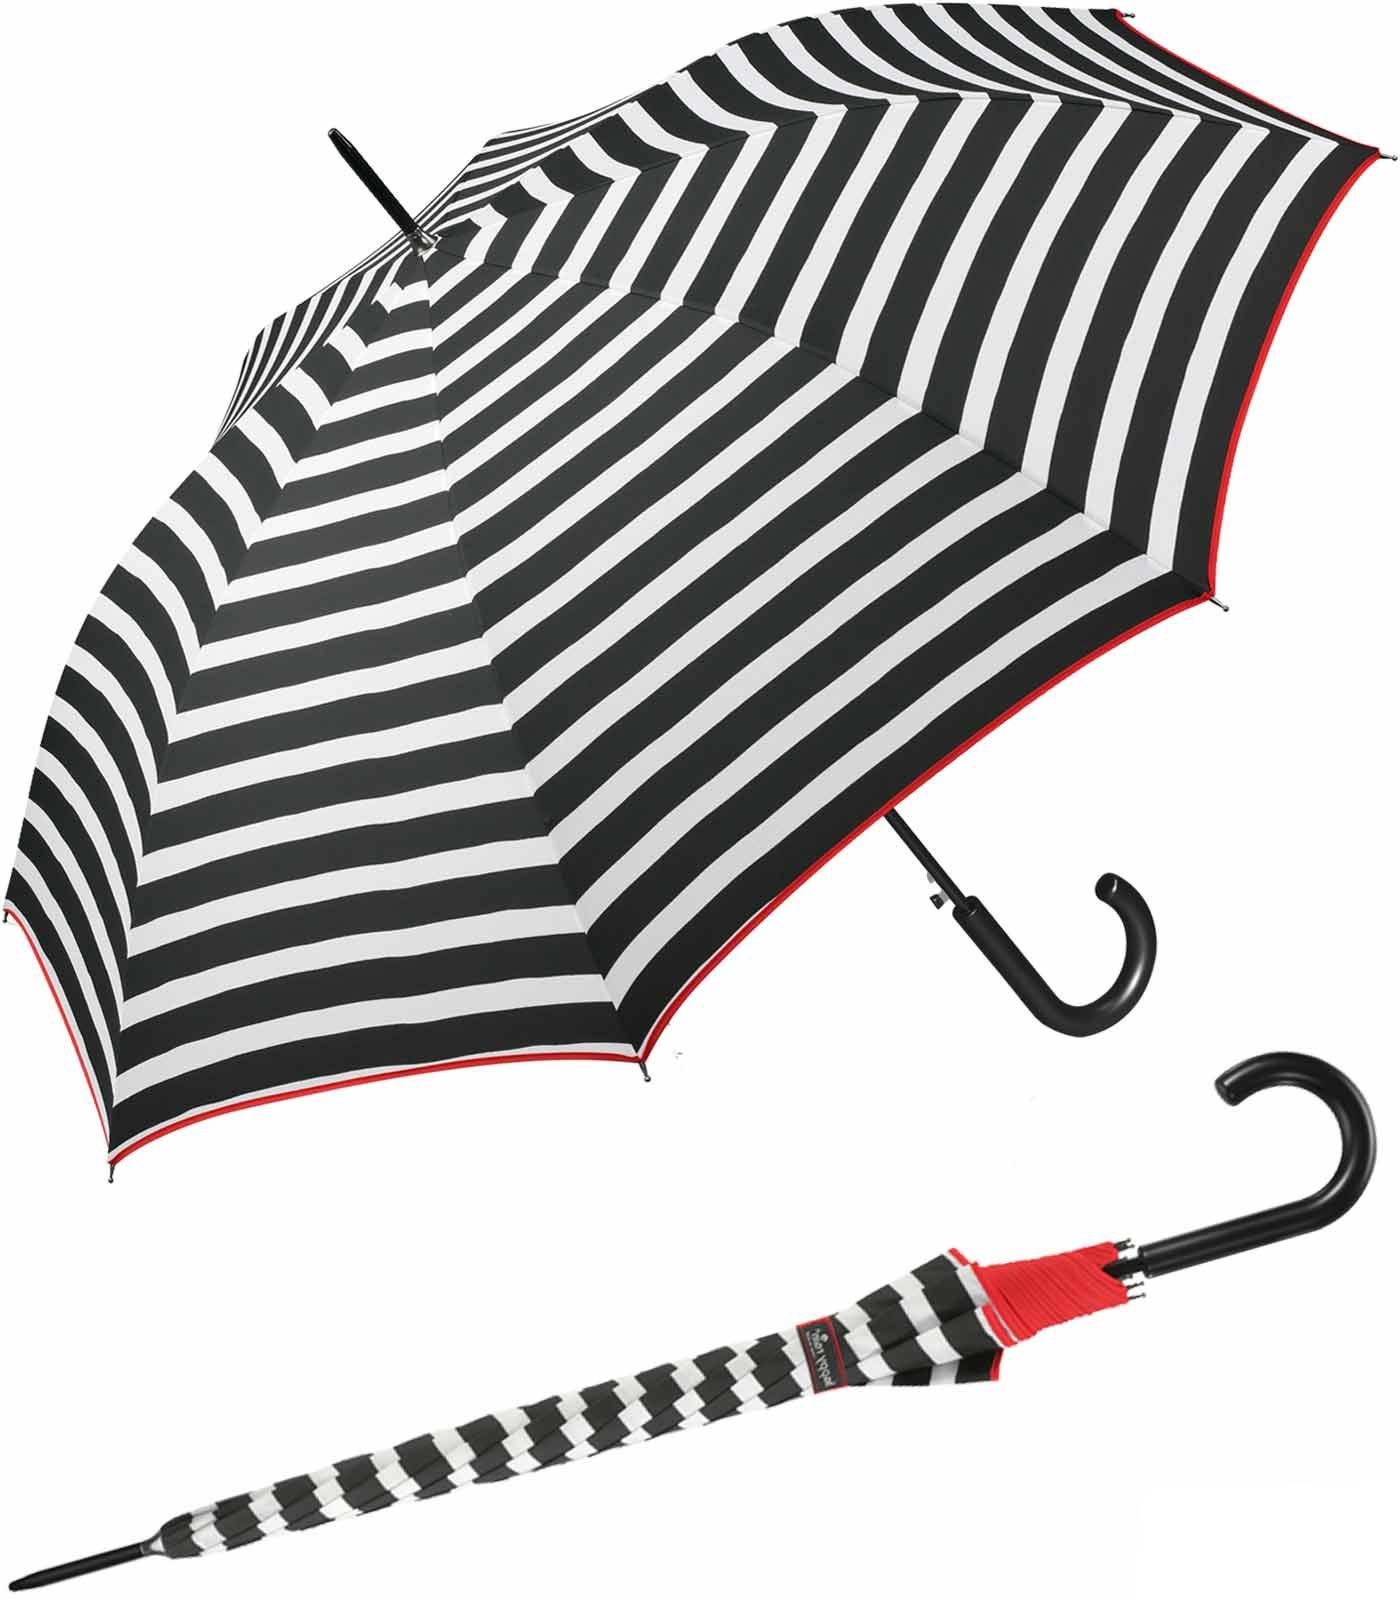 HAPPY RAIN Langregenschirm großer Damen-Regenschirm mit Auf-Automatik, bedruckt mit klassischen weißen Streifen